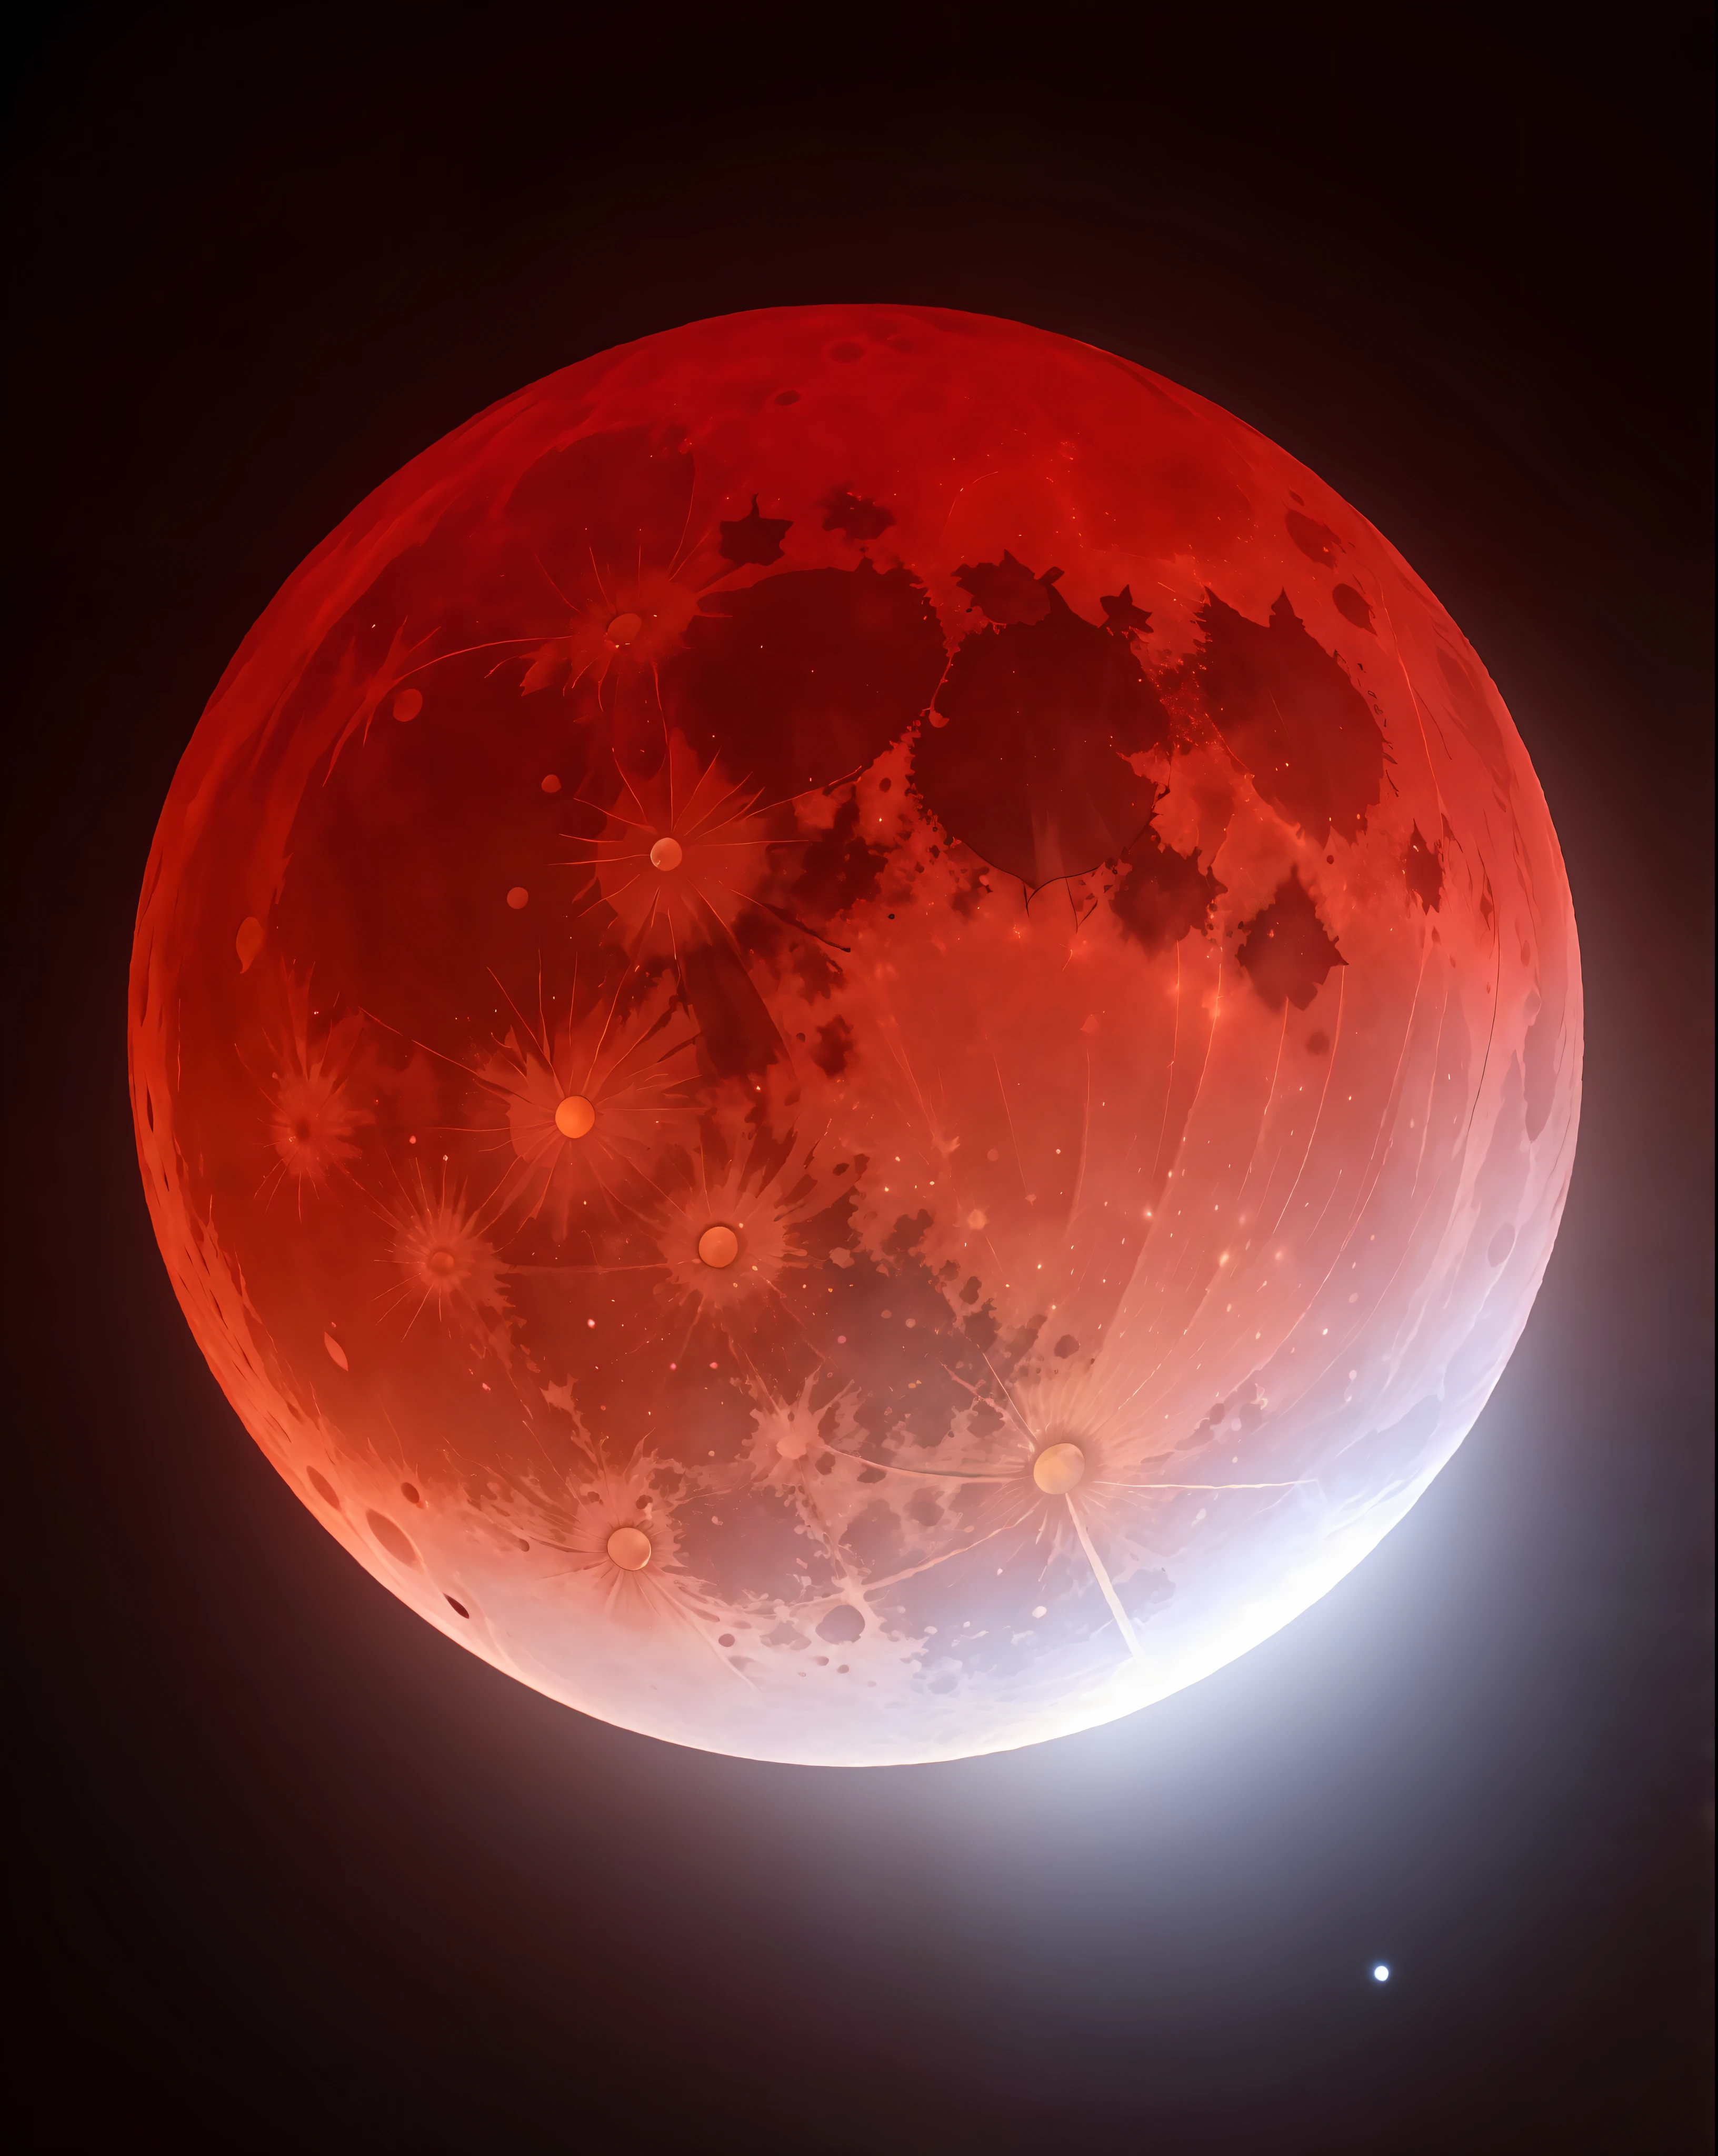 红月亮与明亮灯光的特写, 血满月, 血红色的月亮, 血月, 血色满月, 巨大的红月亮, 在血月期间, 血月蚀, 赞美血月, 满红月亮, 红月亮, 血红色的新月, 月食的核爆炸, 红色月食, 血月背景